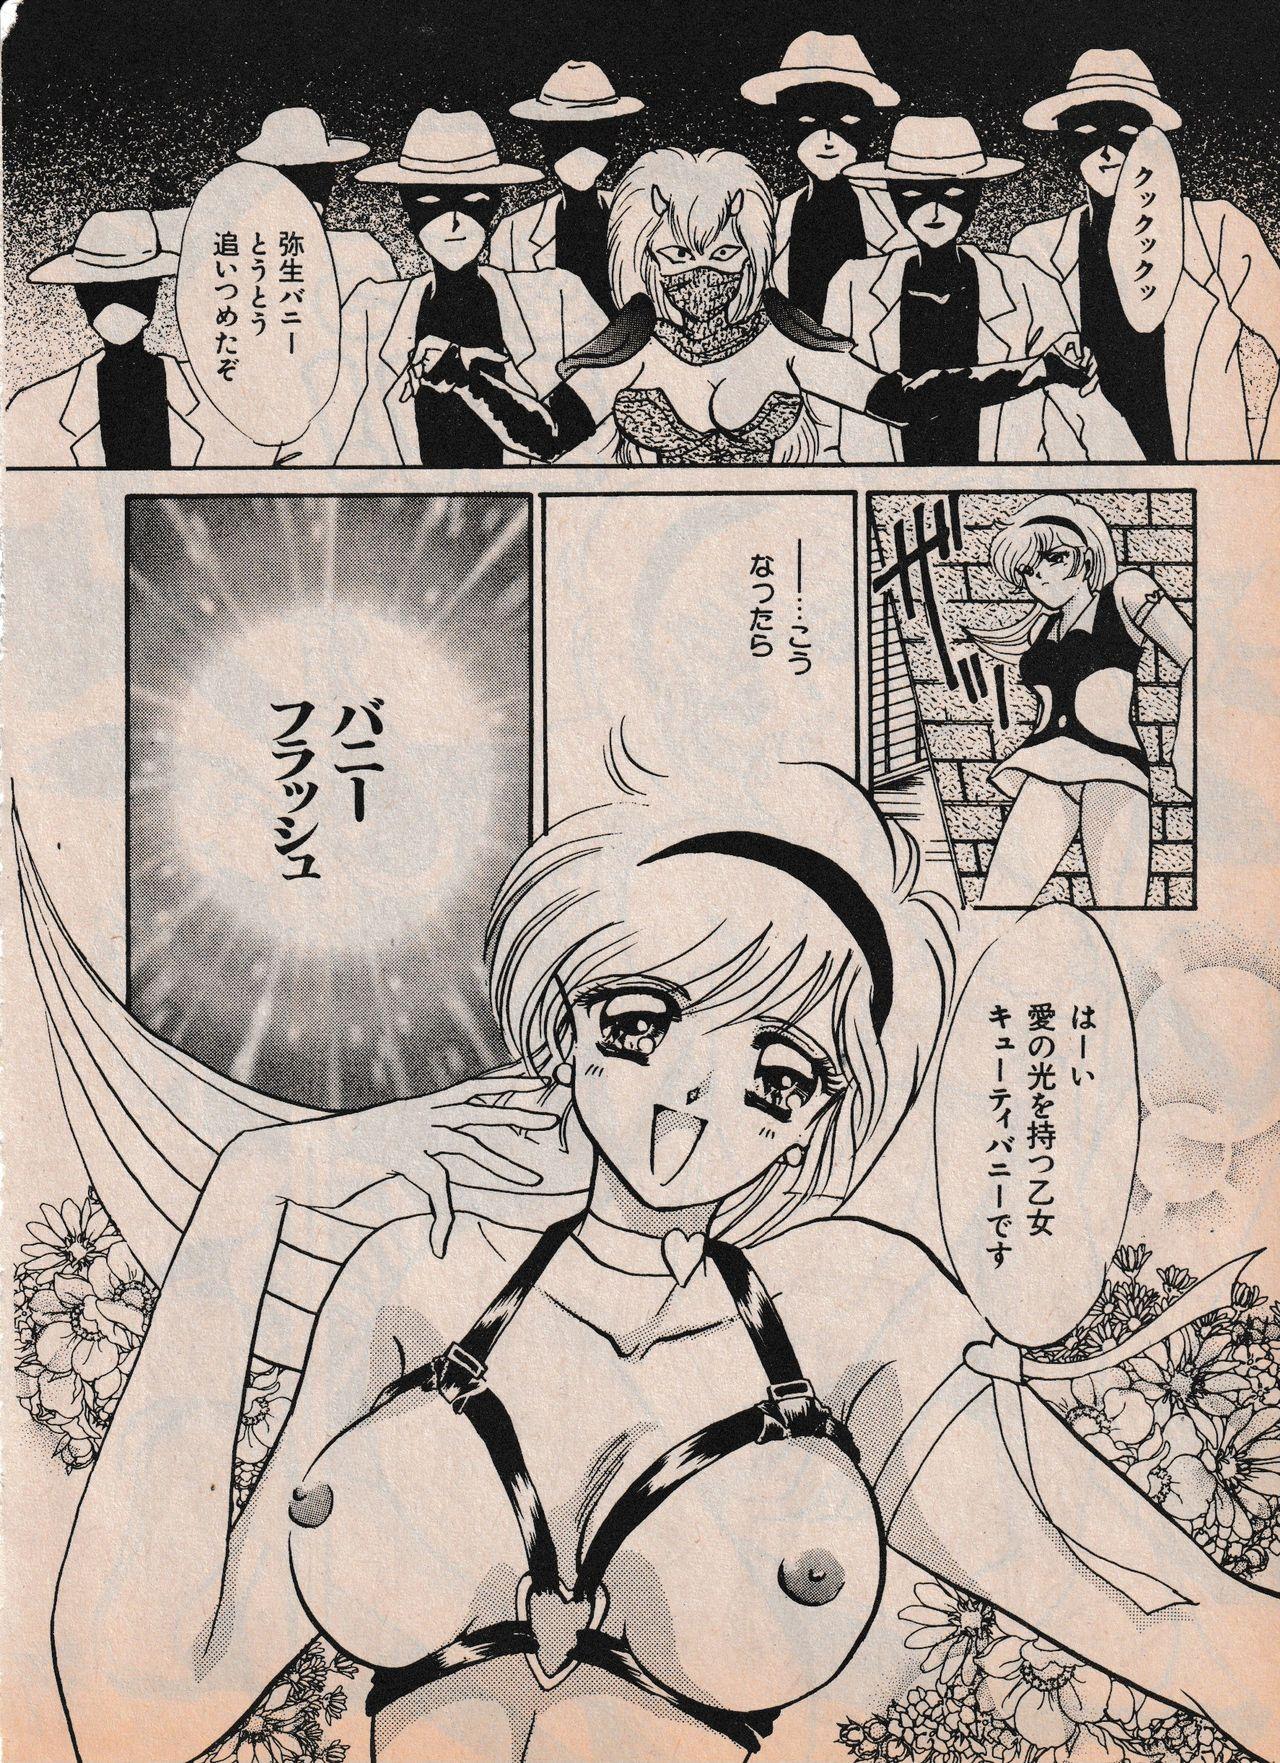 Sailor X vol. 4 - Sailor X vs. Cunty Horny! 70